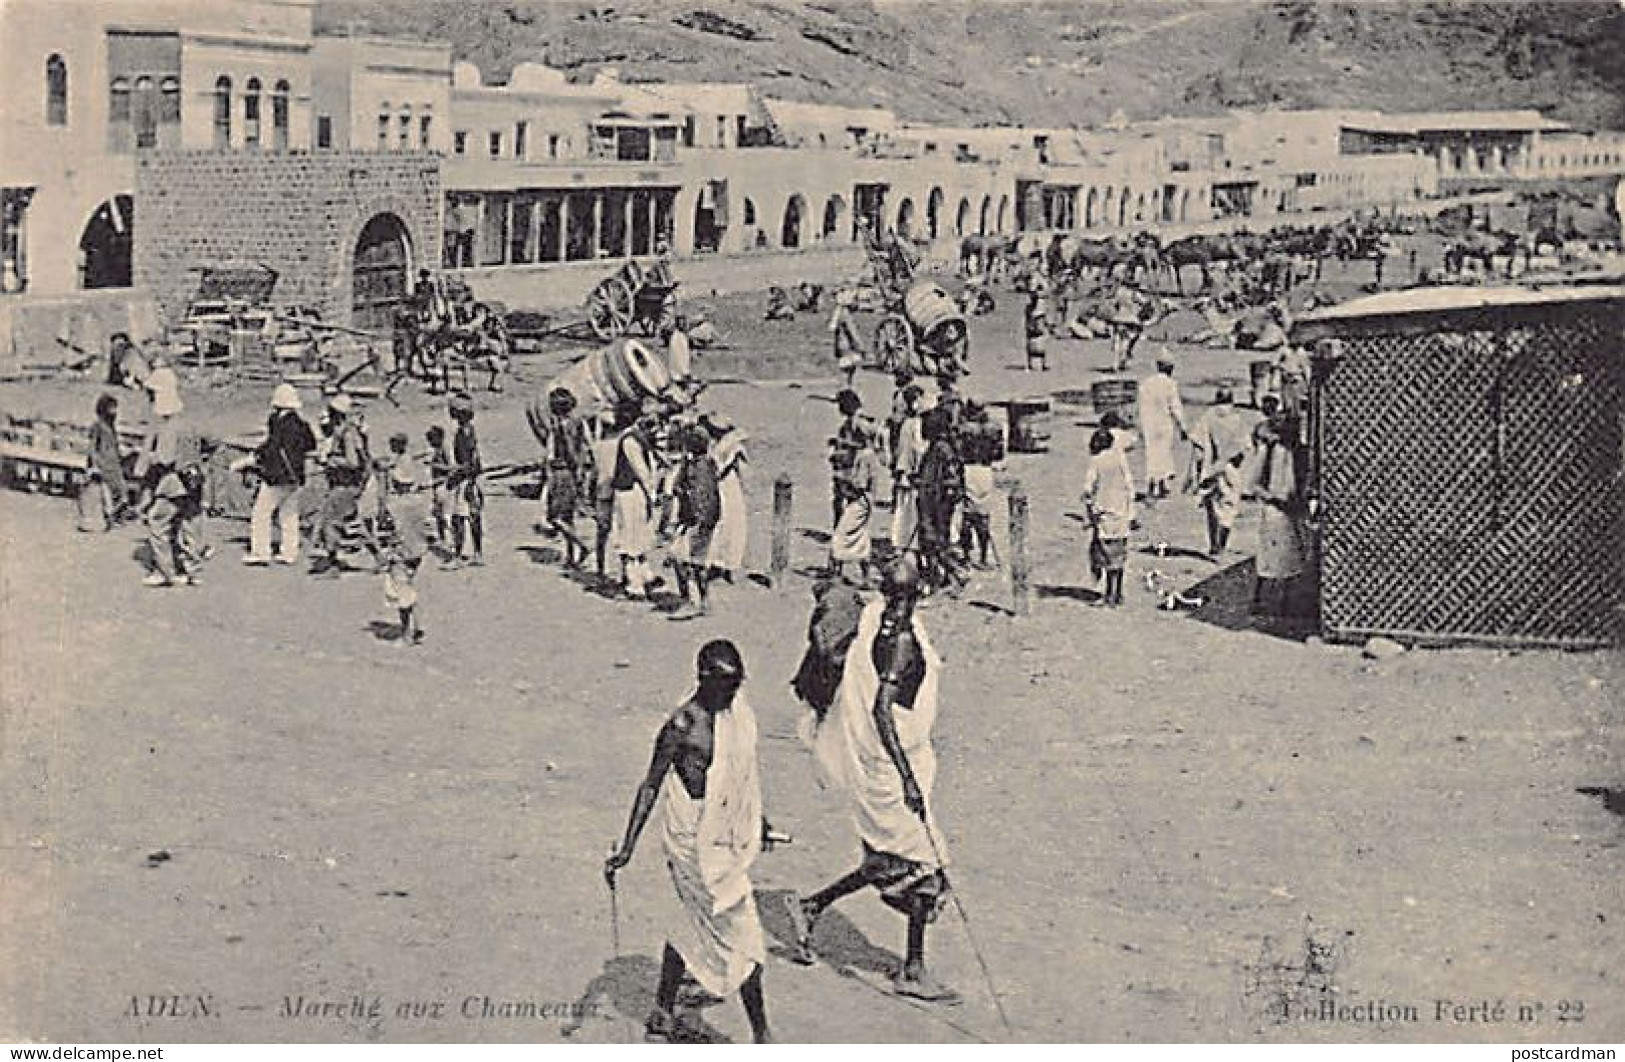 Yemen - ADEN - Camel Market - Publ. Ferté 22 - Jemen